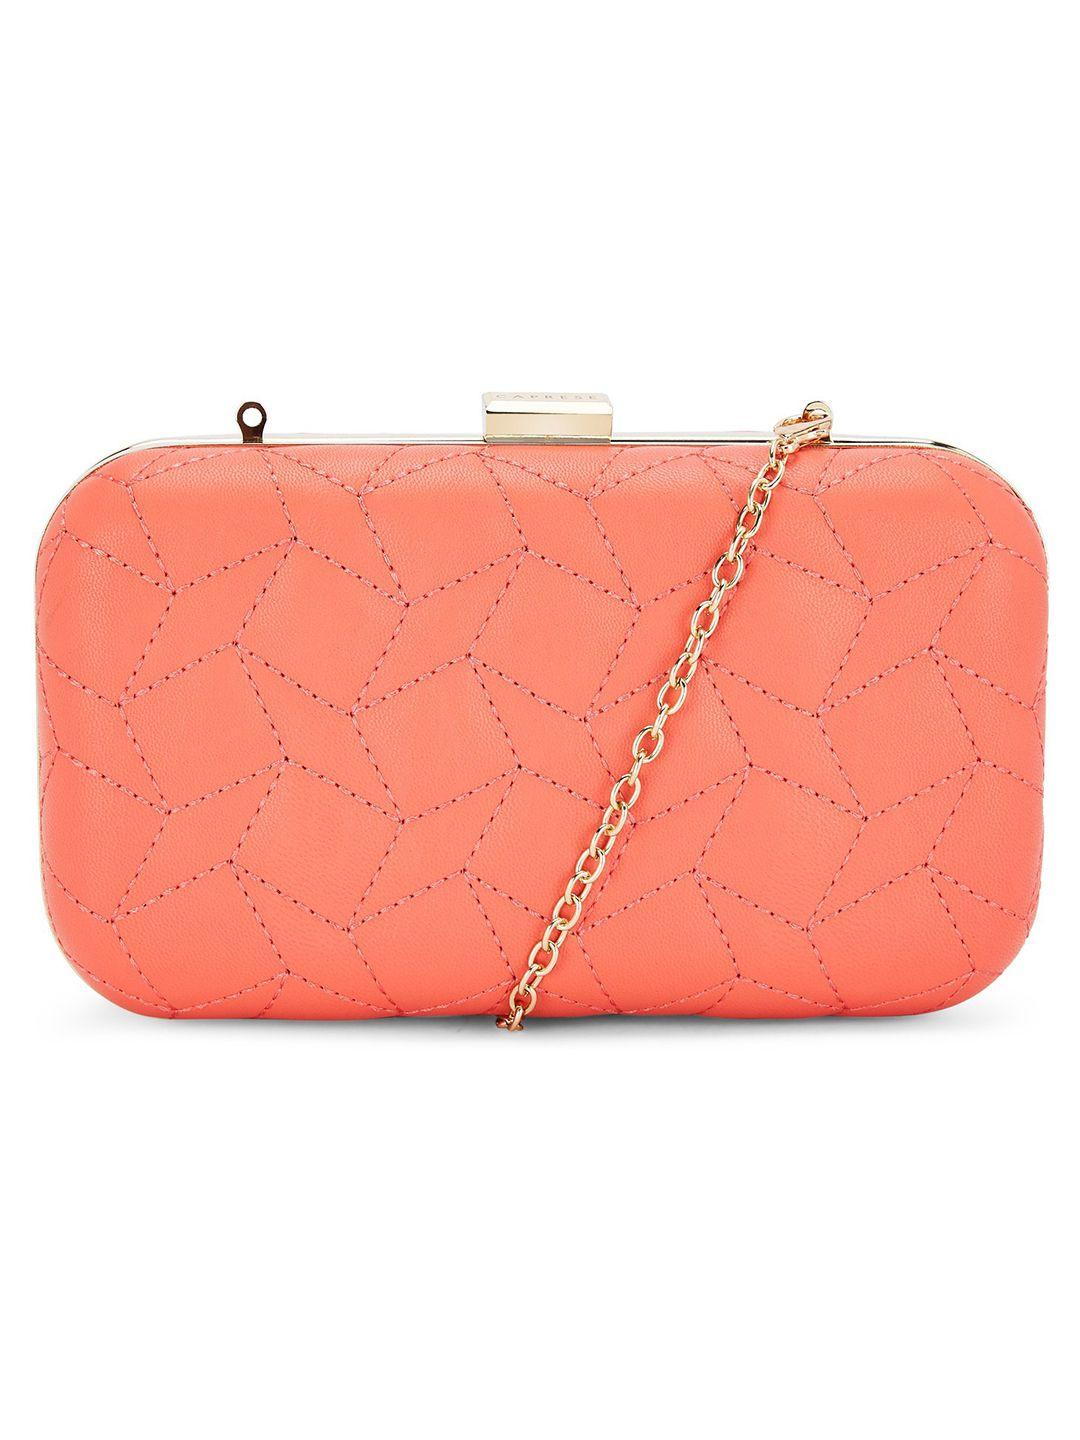 caprese coral orange textured purse clutch